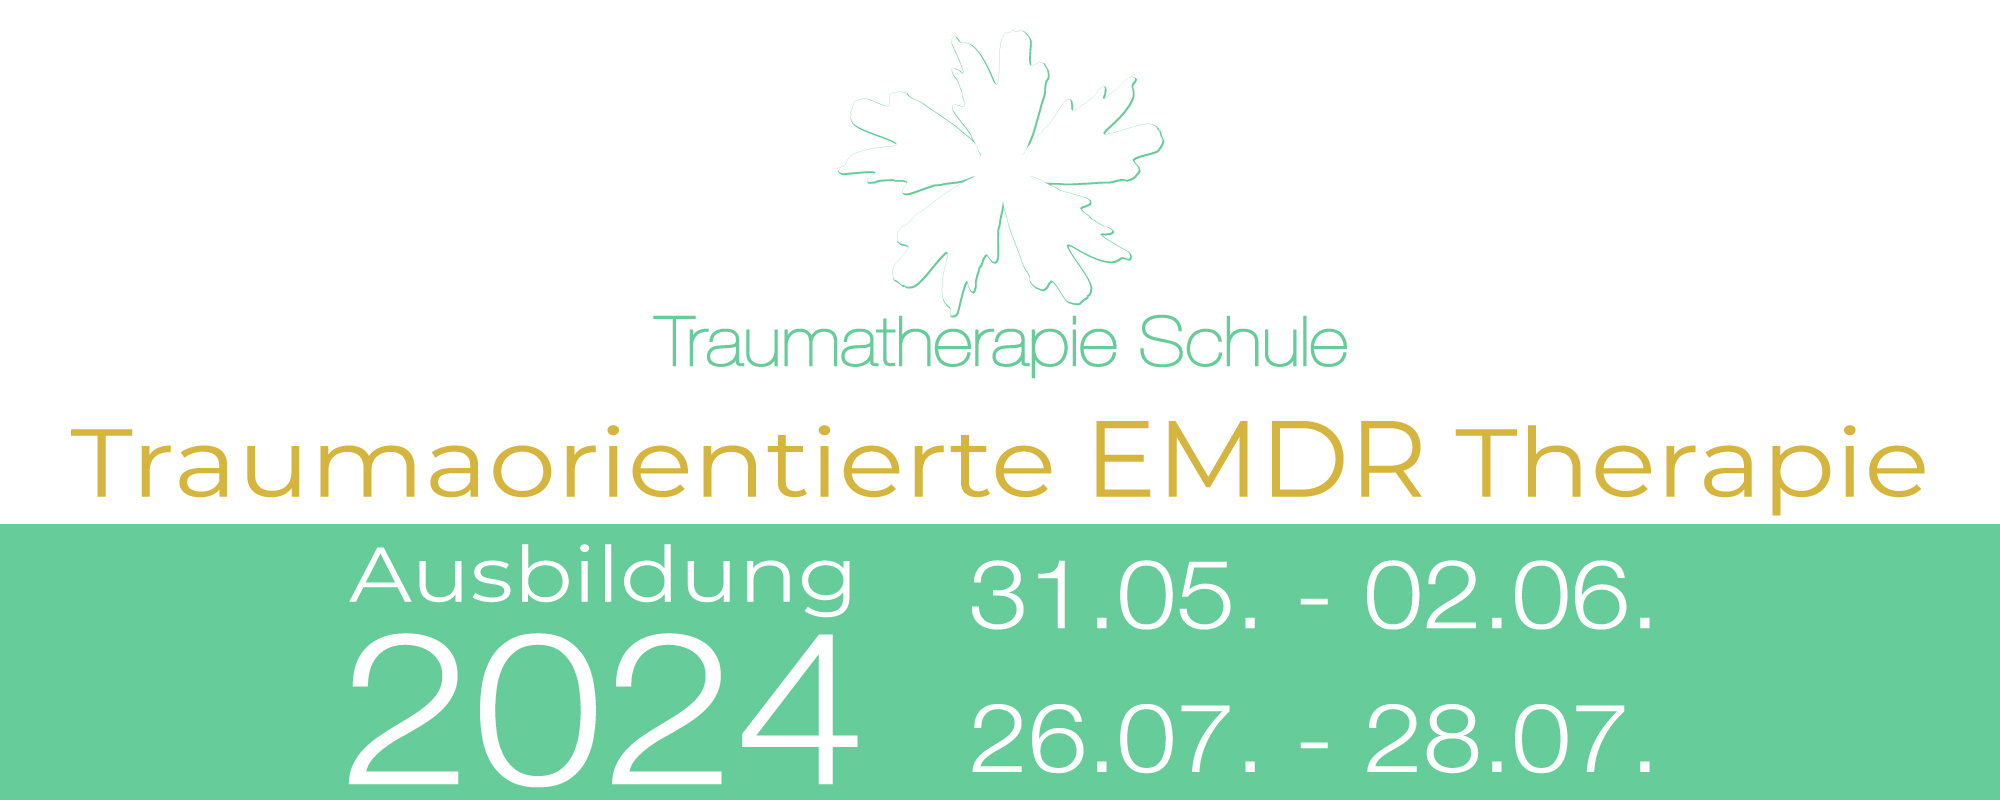 Traumaorientierte EMDR Therapie Ausbildung | Traumatherapie Schule | Zentrum für ganzheitliche Traumatherapie